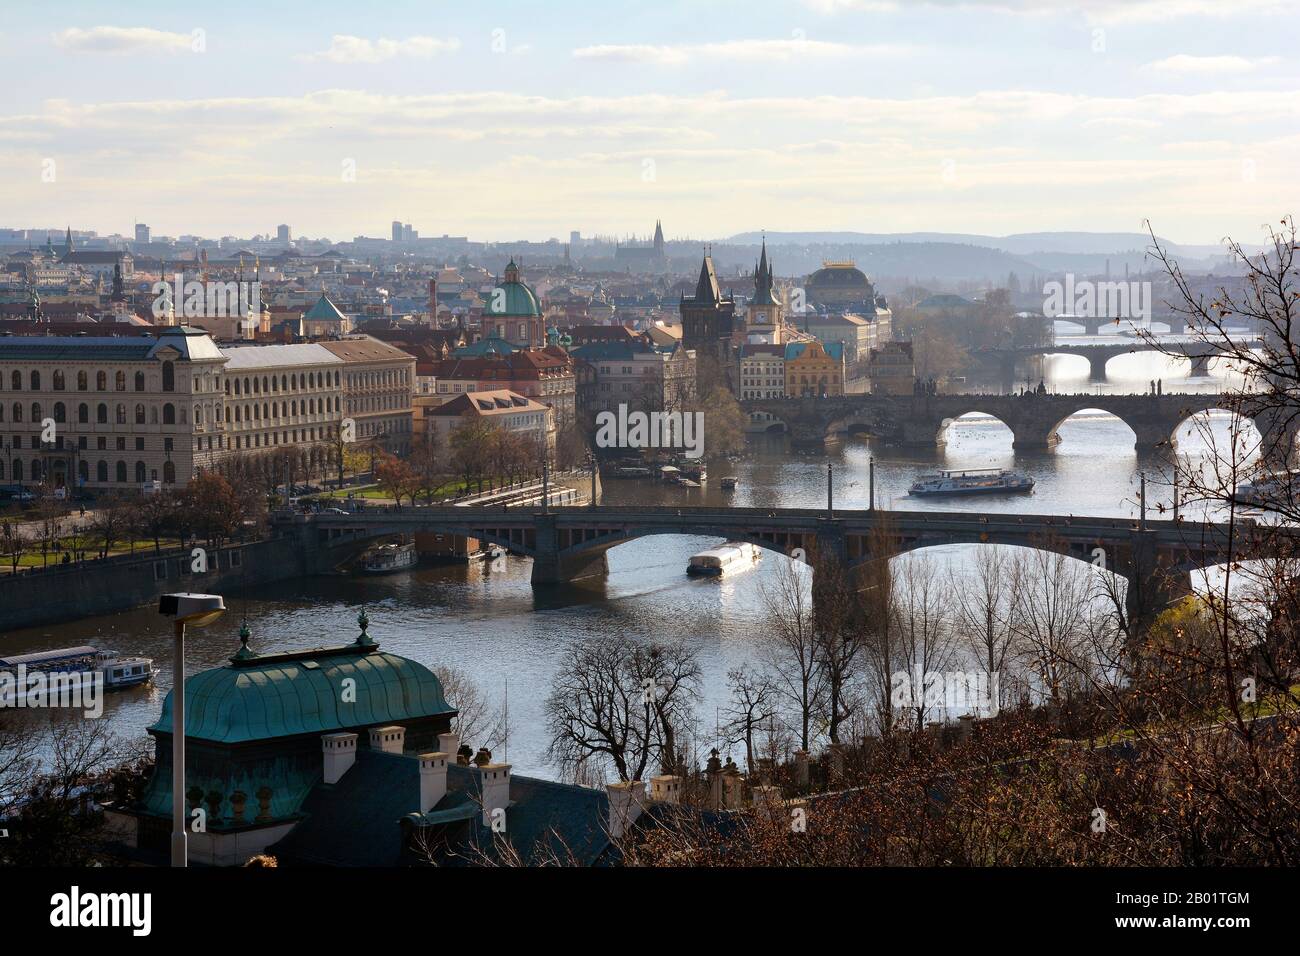 Prague, Czech Republic - city scape with bridges over river Moldau Stock Photo